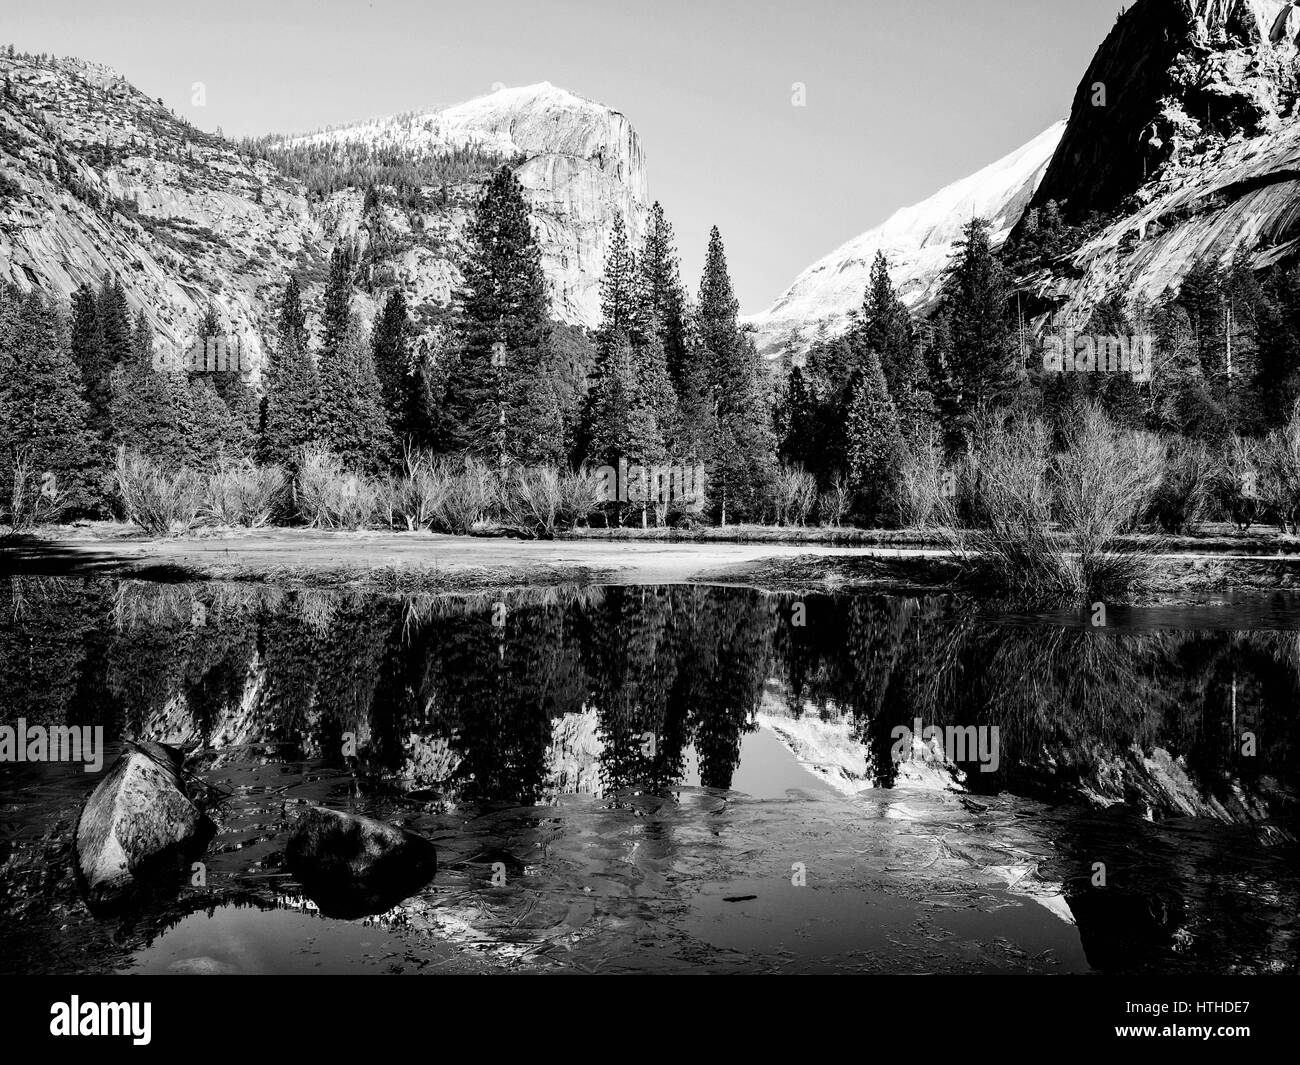 Ein Blick auf Mirror Lake im Yosemite Valley National Park mit schwarz-weiß  Fotografie im Stil von Ansel Adams Stockfotografie - Alamy